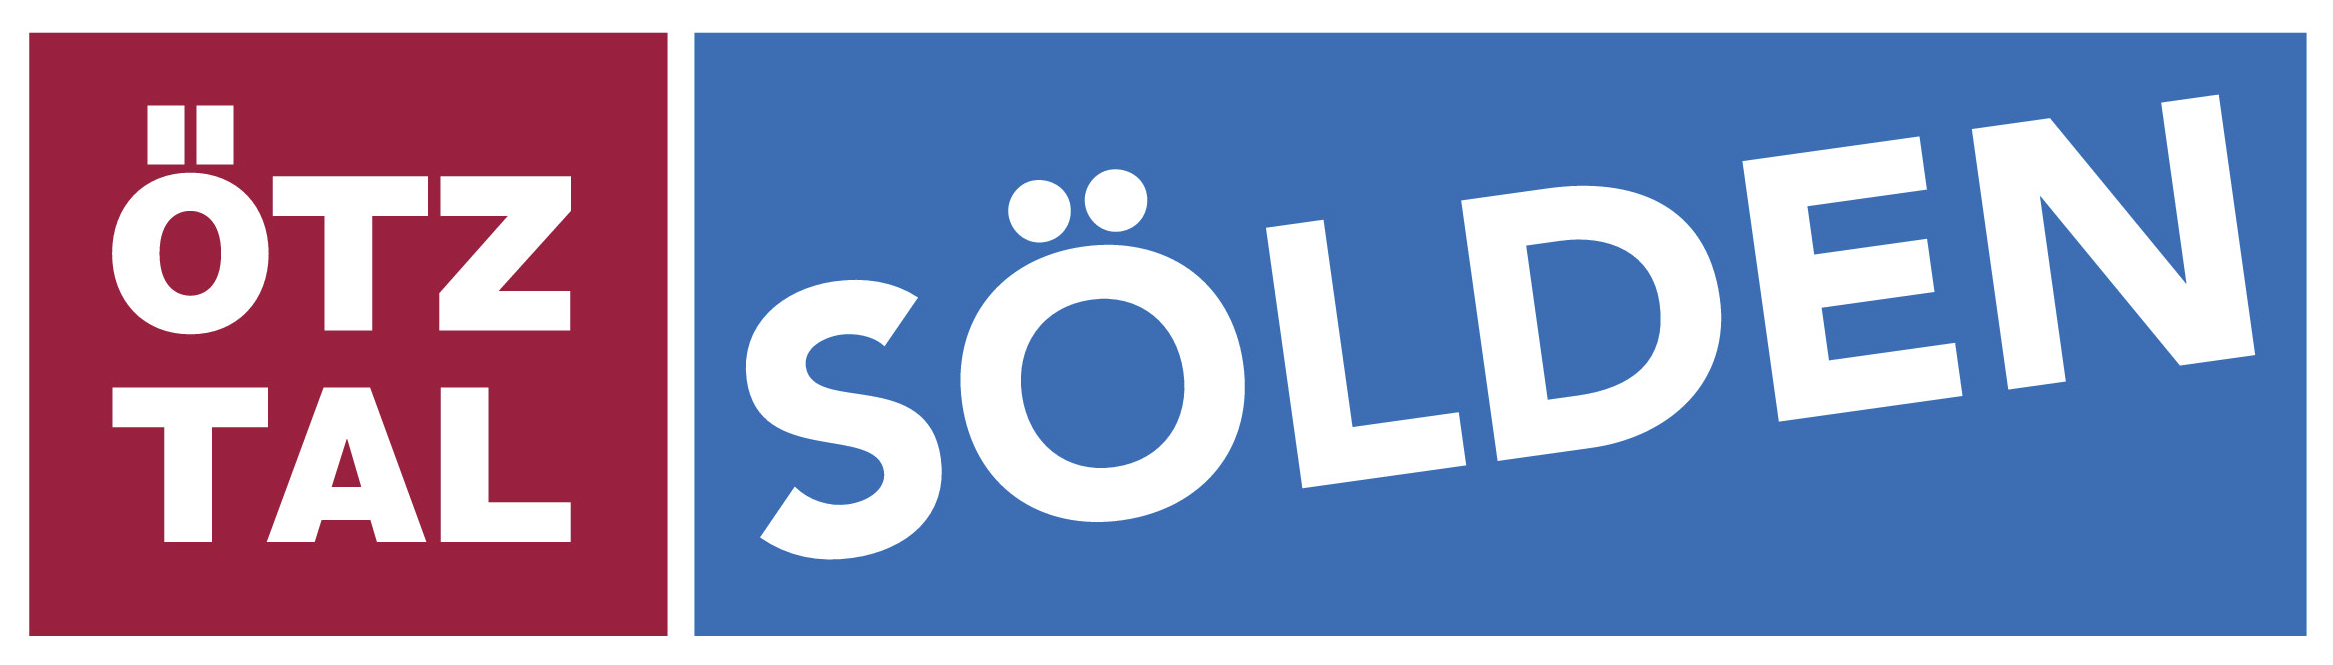 soel_logo